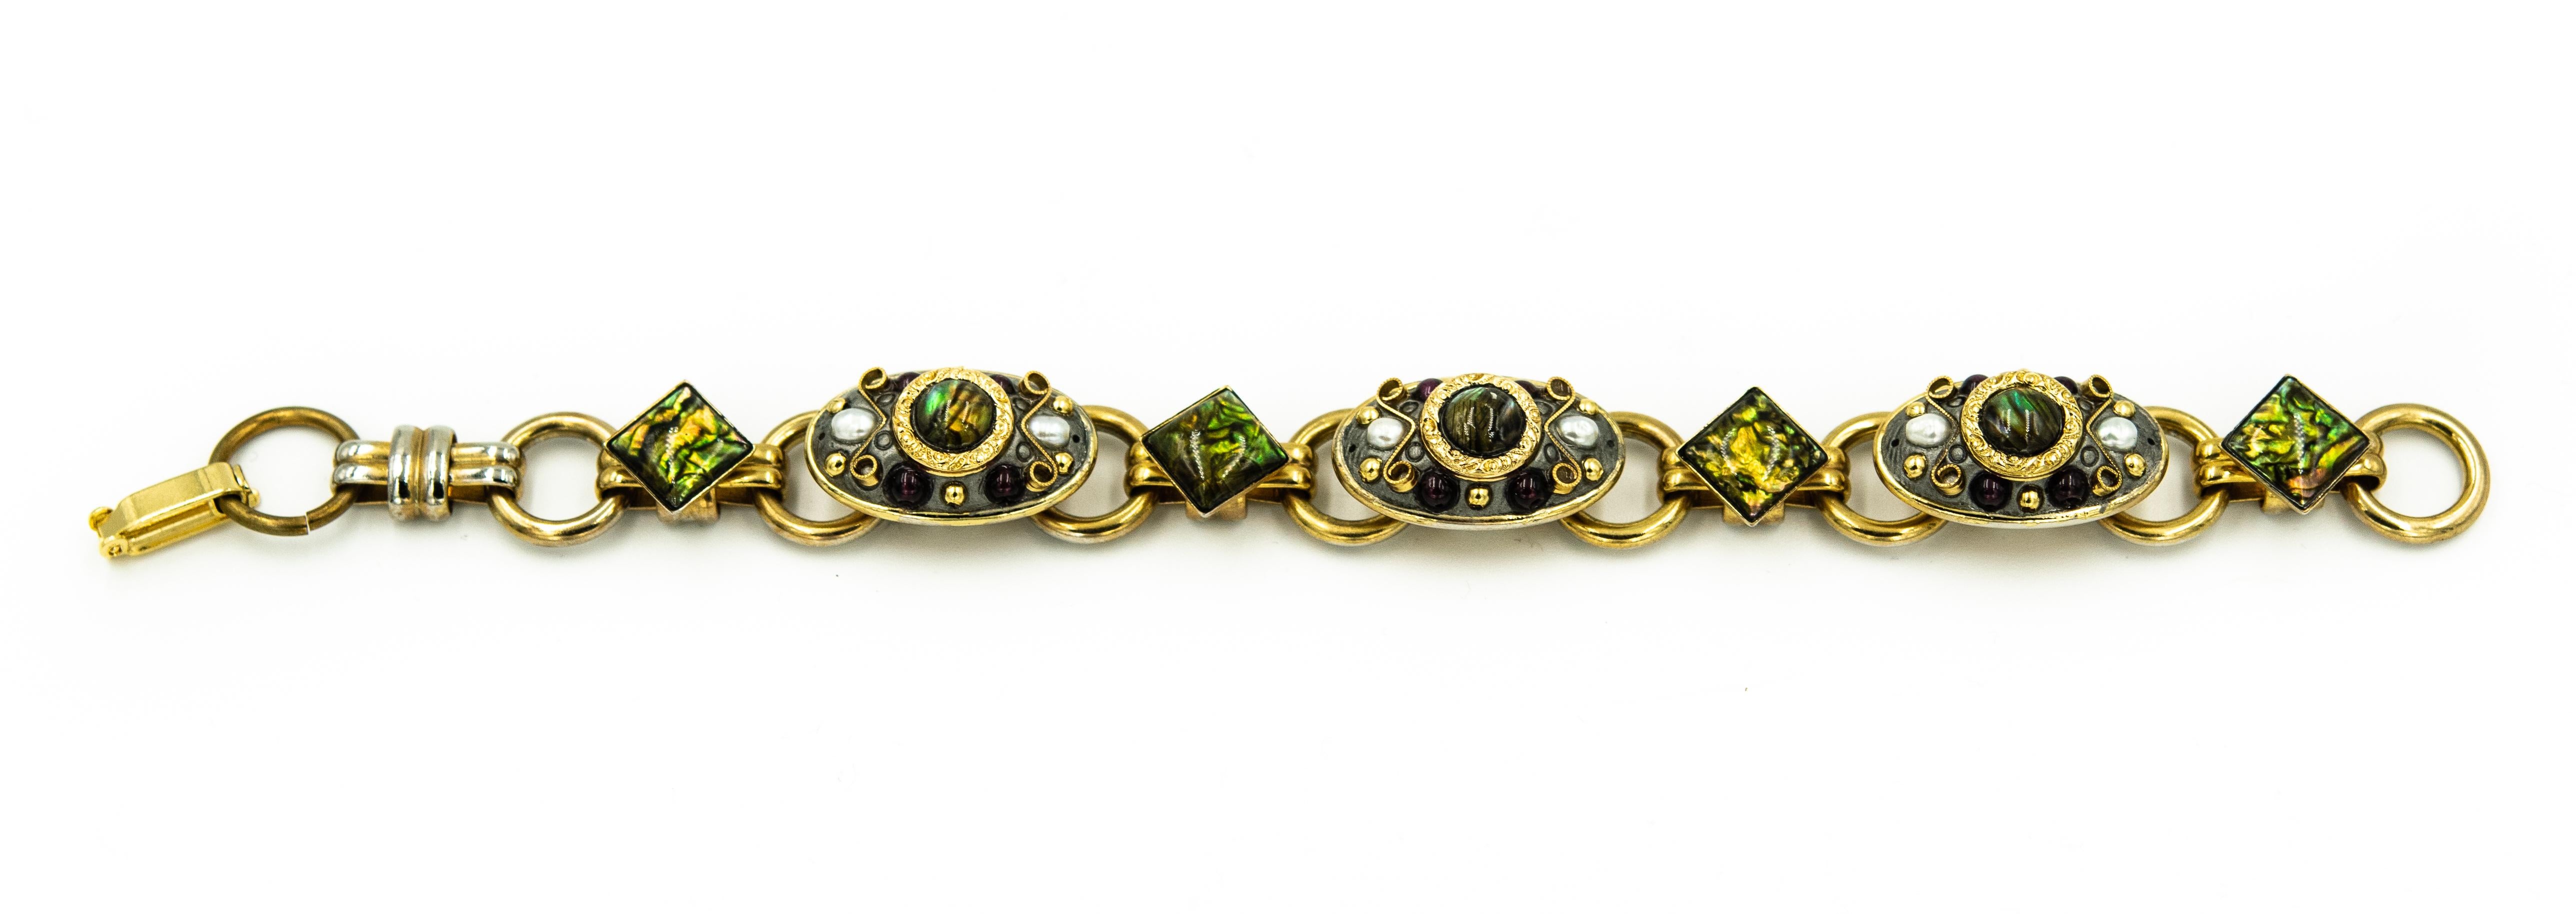 Ein schönes Armband von Michal Golan und  Broschen-Anhänger-Set enthält:   Die vergoldete Brosche ist mit Saatperlen, Abalone, grünen Glassteinen und einem schönen filigranen Herzmotiv verziert. Sehr hochwertiges und vielseitiges Schmuckstück, das